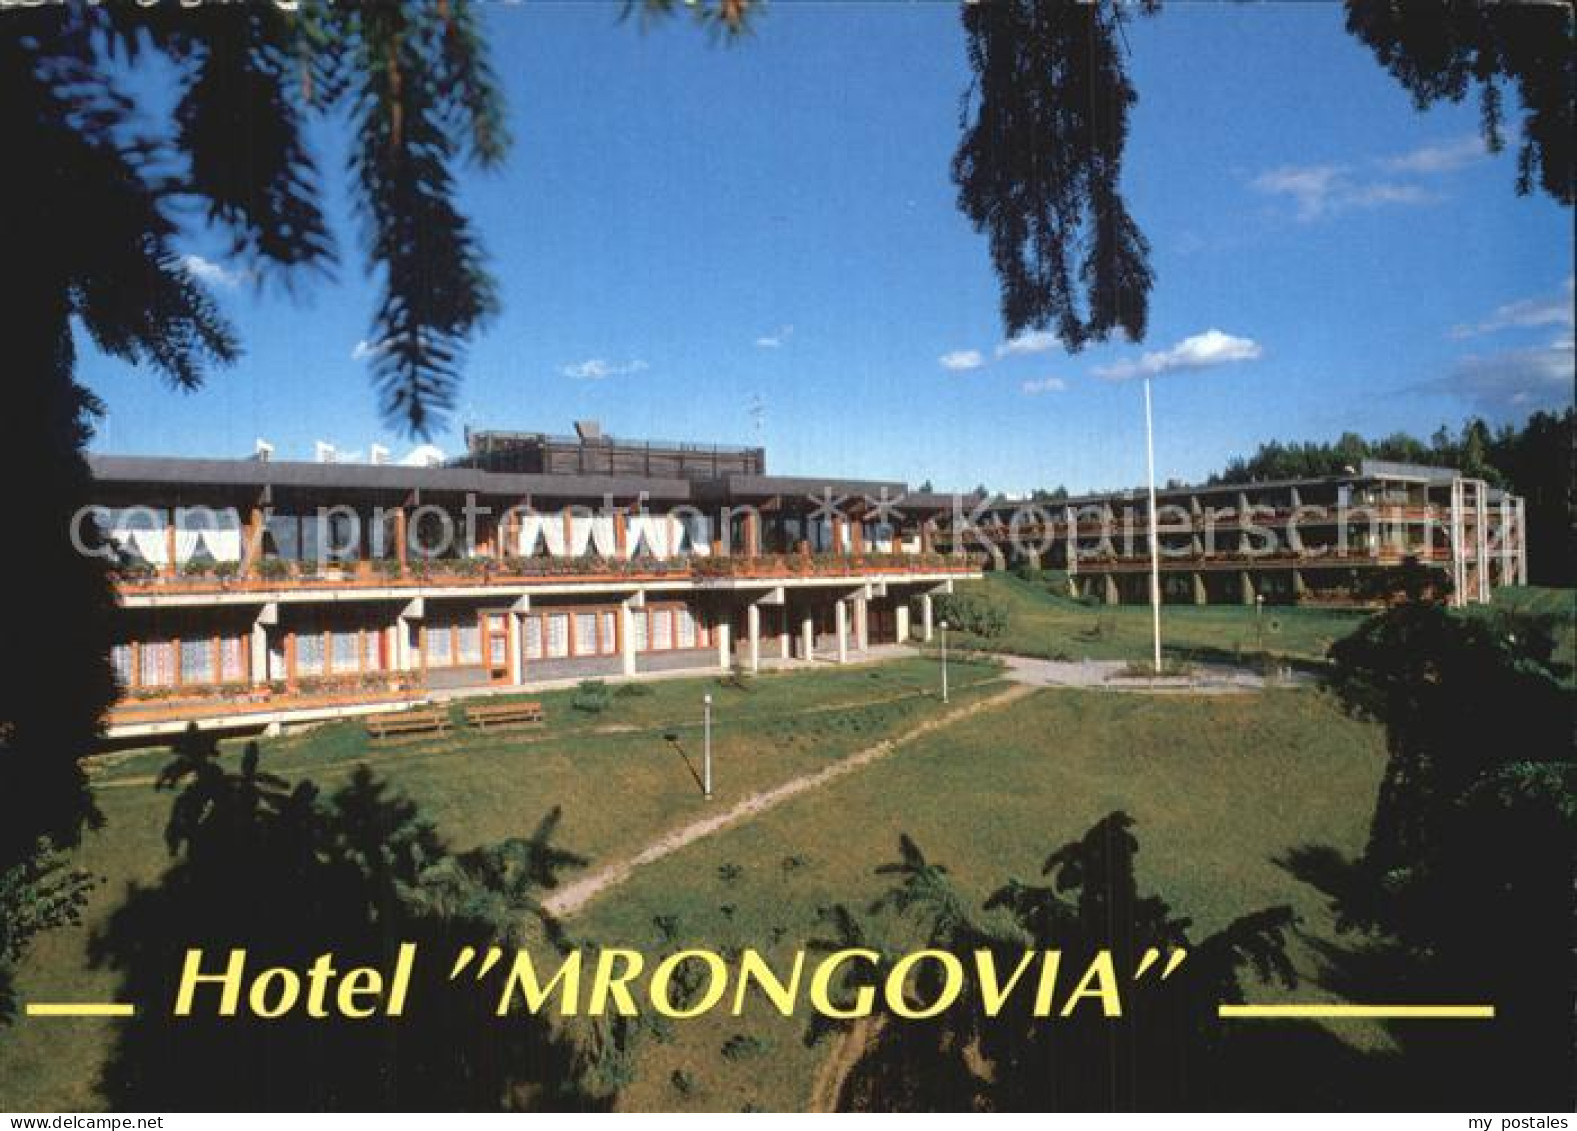 72549908 Sensburg Mragowo Hotel Mrongovia  - Poland